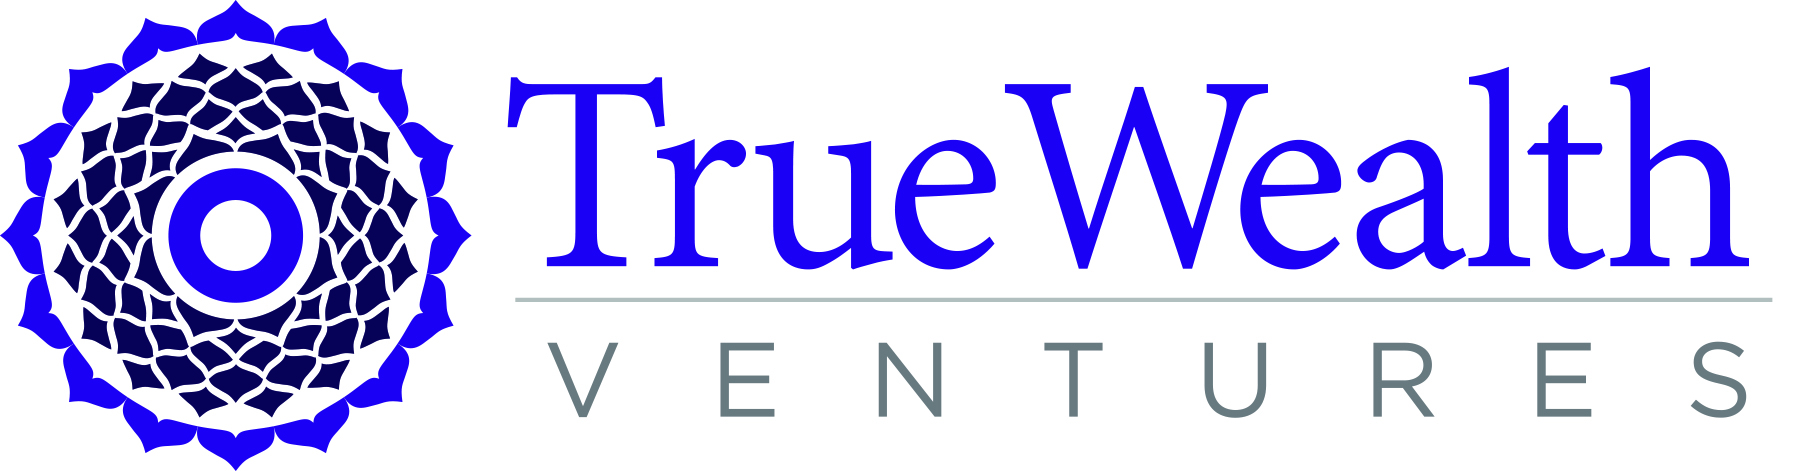 TrueWealth Ventures logo